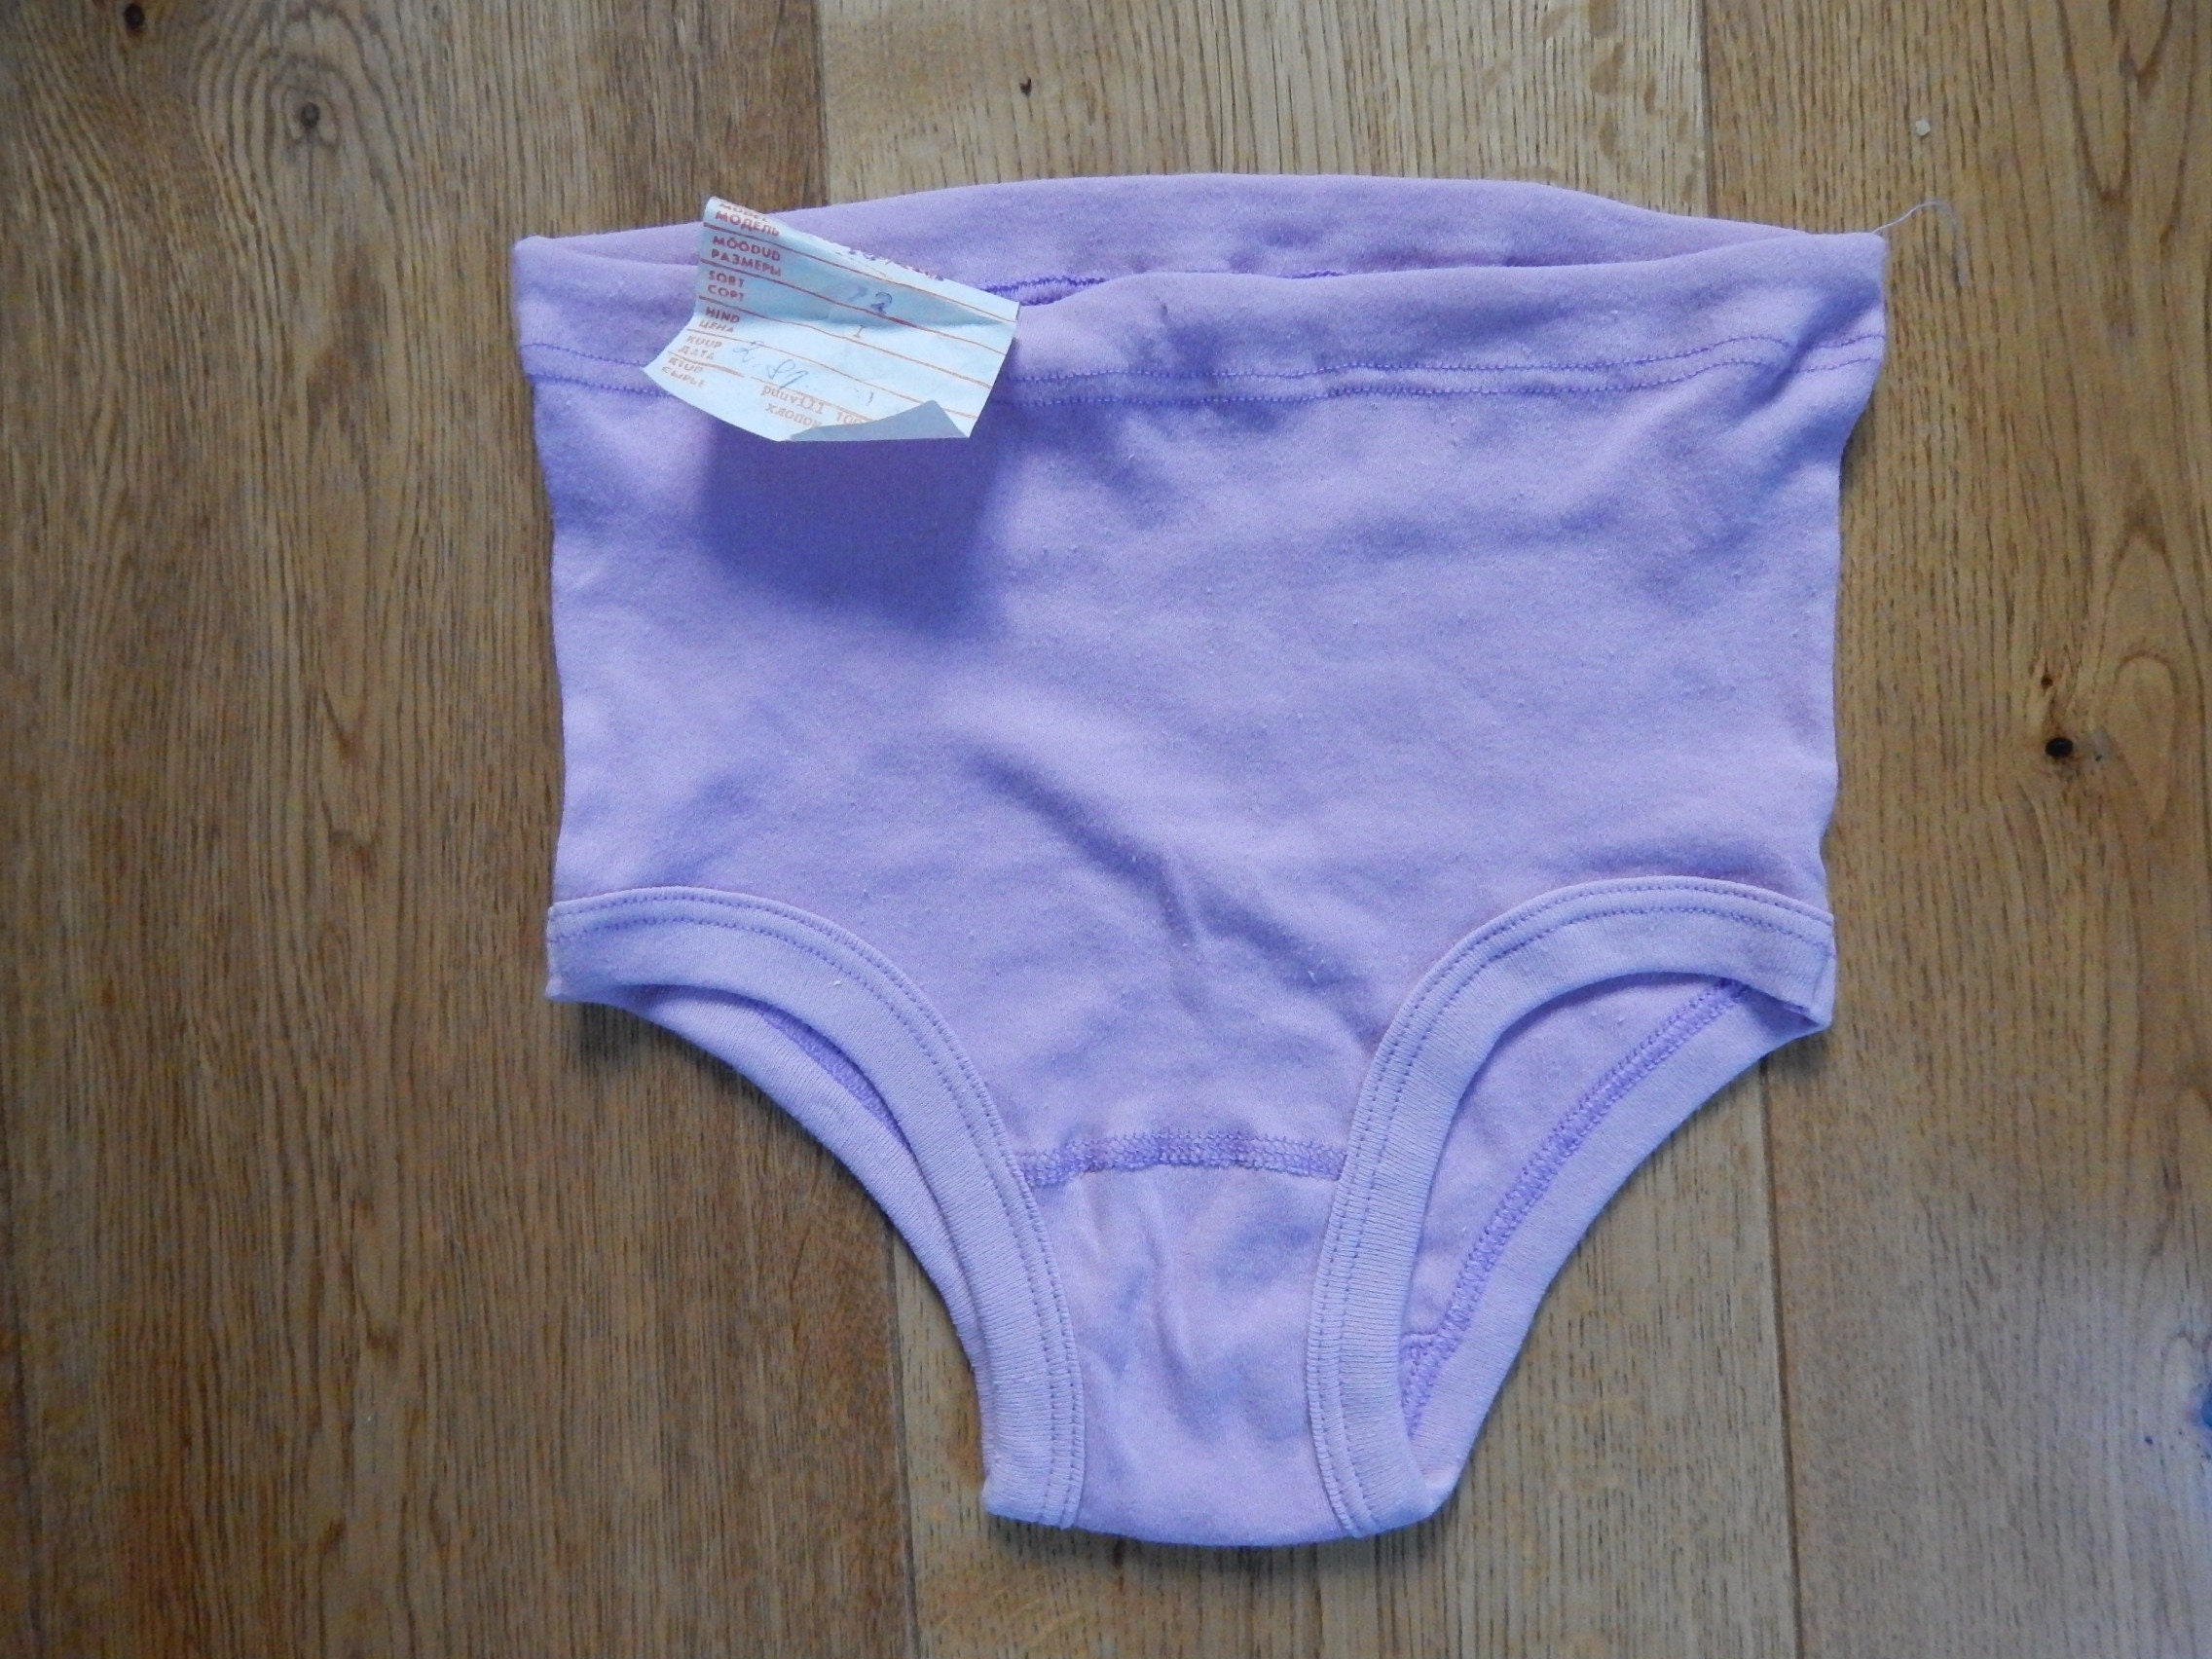 Vintage Girls 10-12 Years Old Vintage Purple Underwear Unused Underwear  Underpants 100% Cotton Made in Era NOS -  Canada